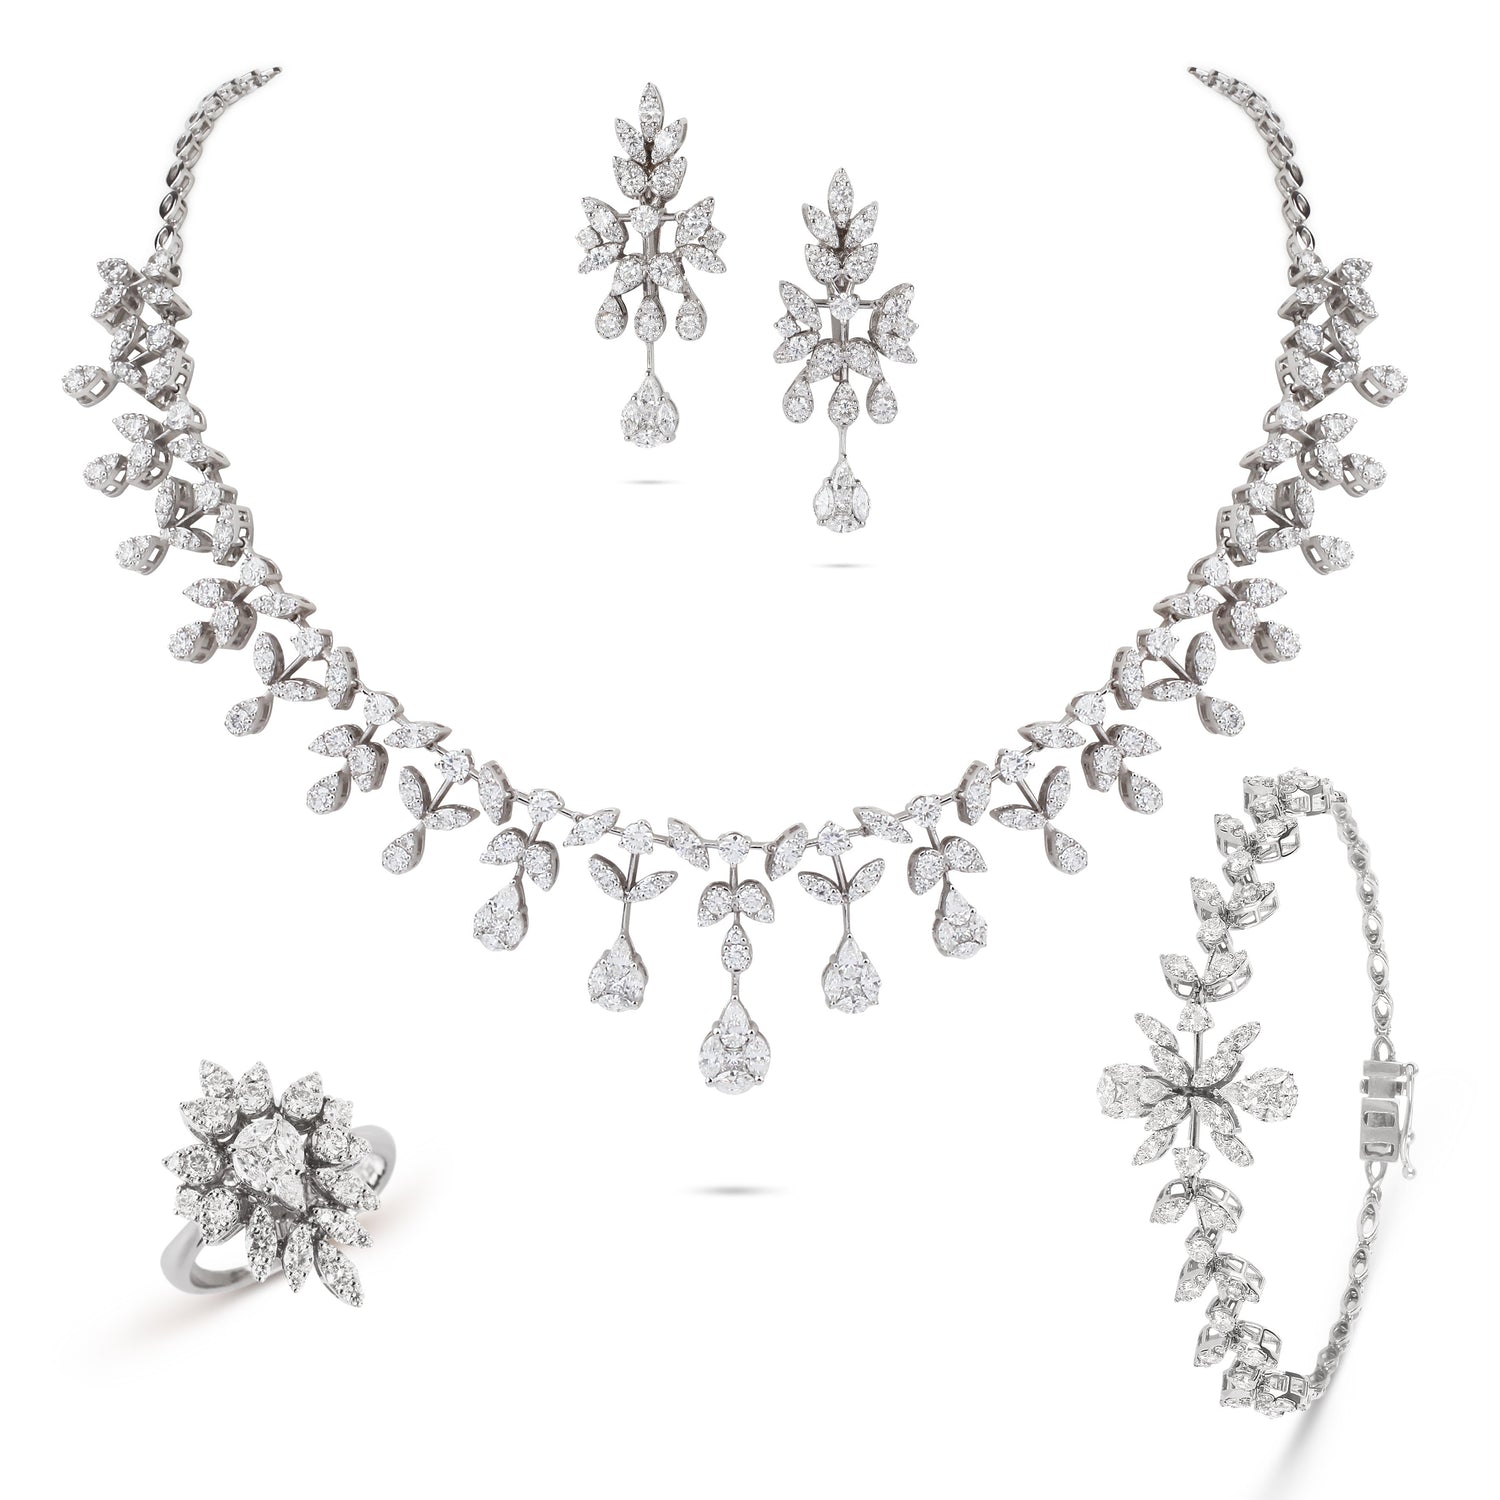 Marquise Drops Diamond Earrings | Earrings Online Shopping